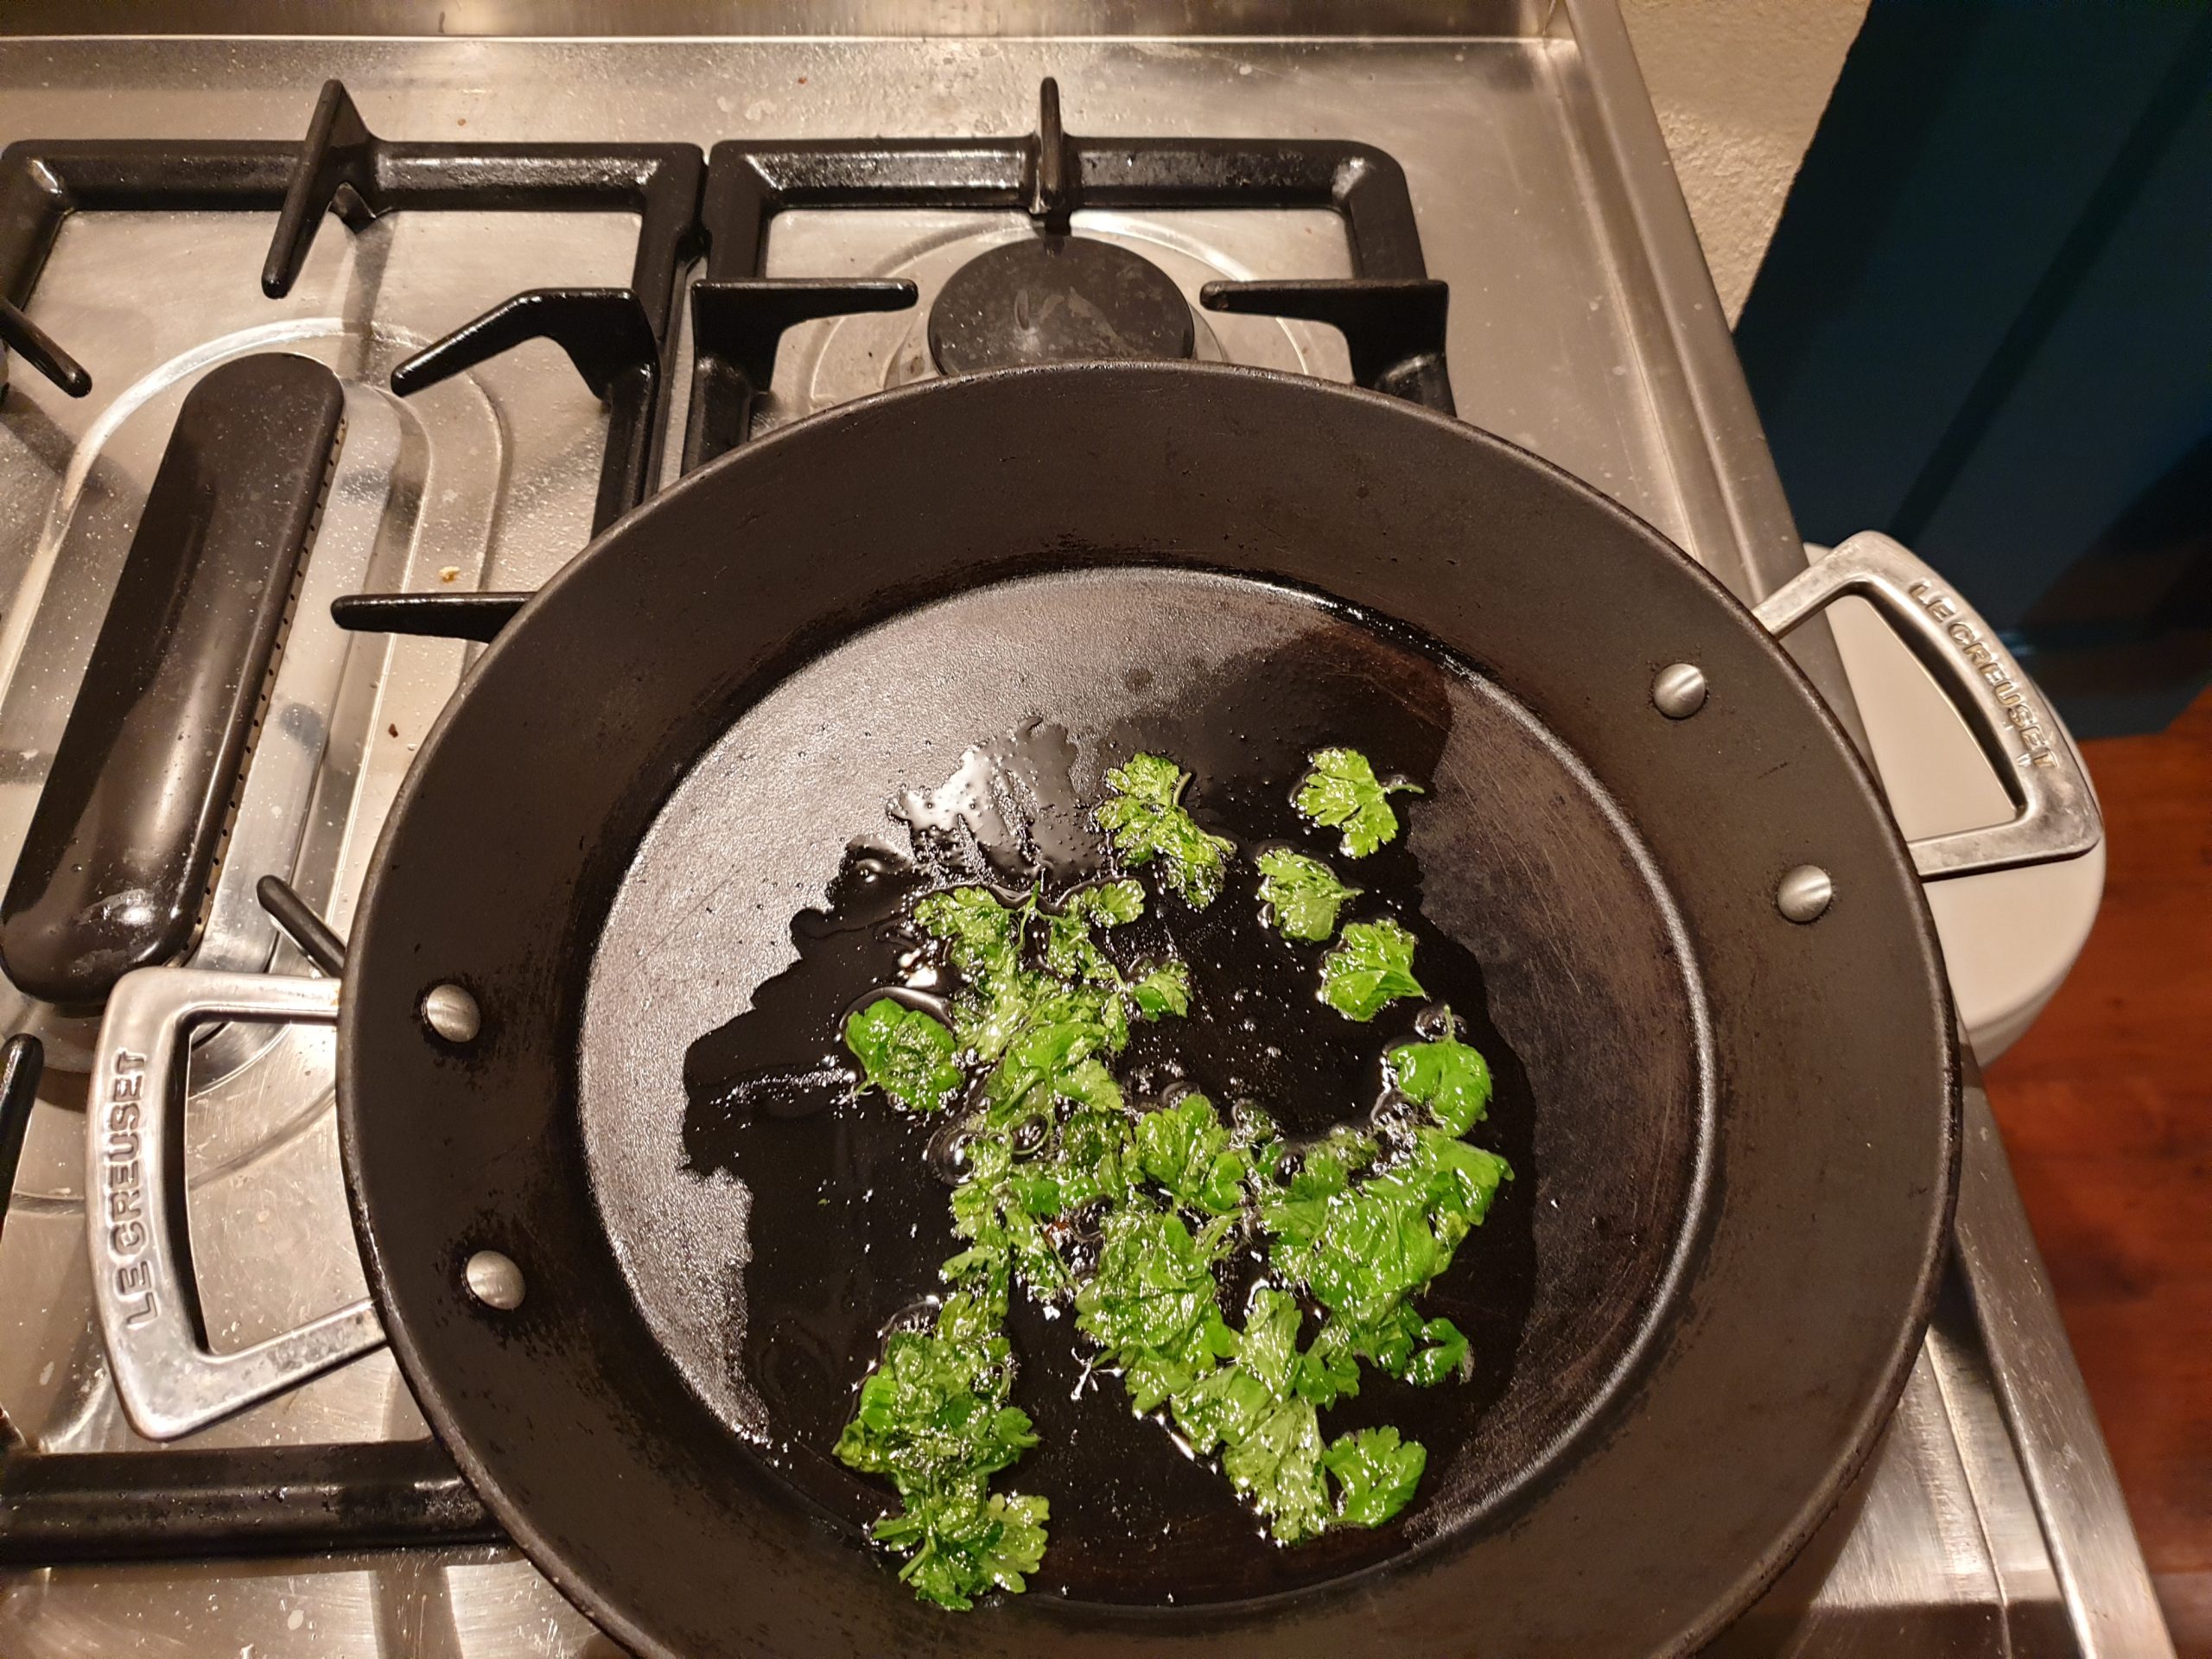 Het recept vraagt om de peterselie knapperig te bakken voor de aardappelsalade. Foto: Business Insider/Alina Borovitskaya